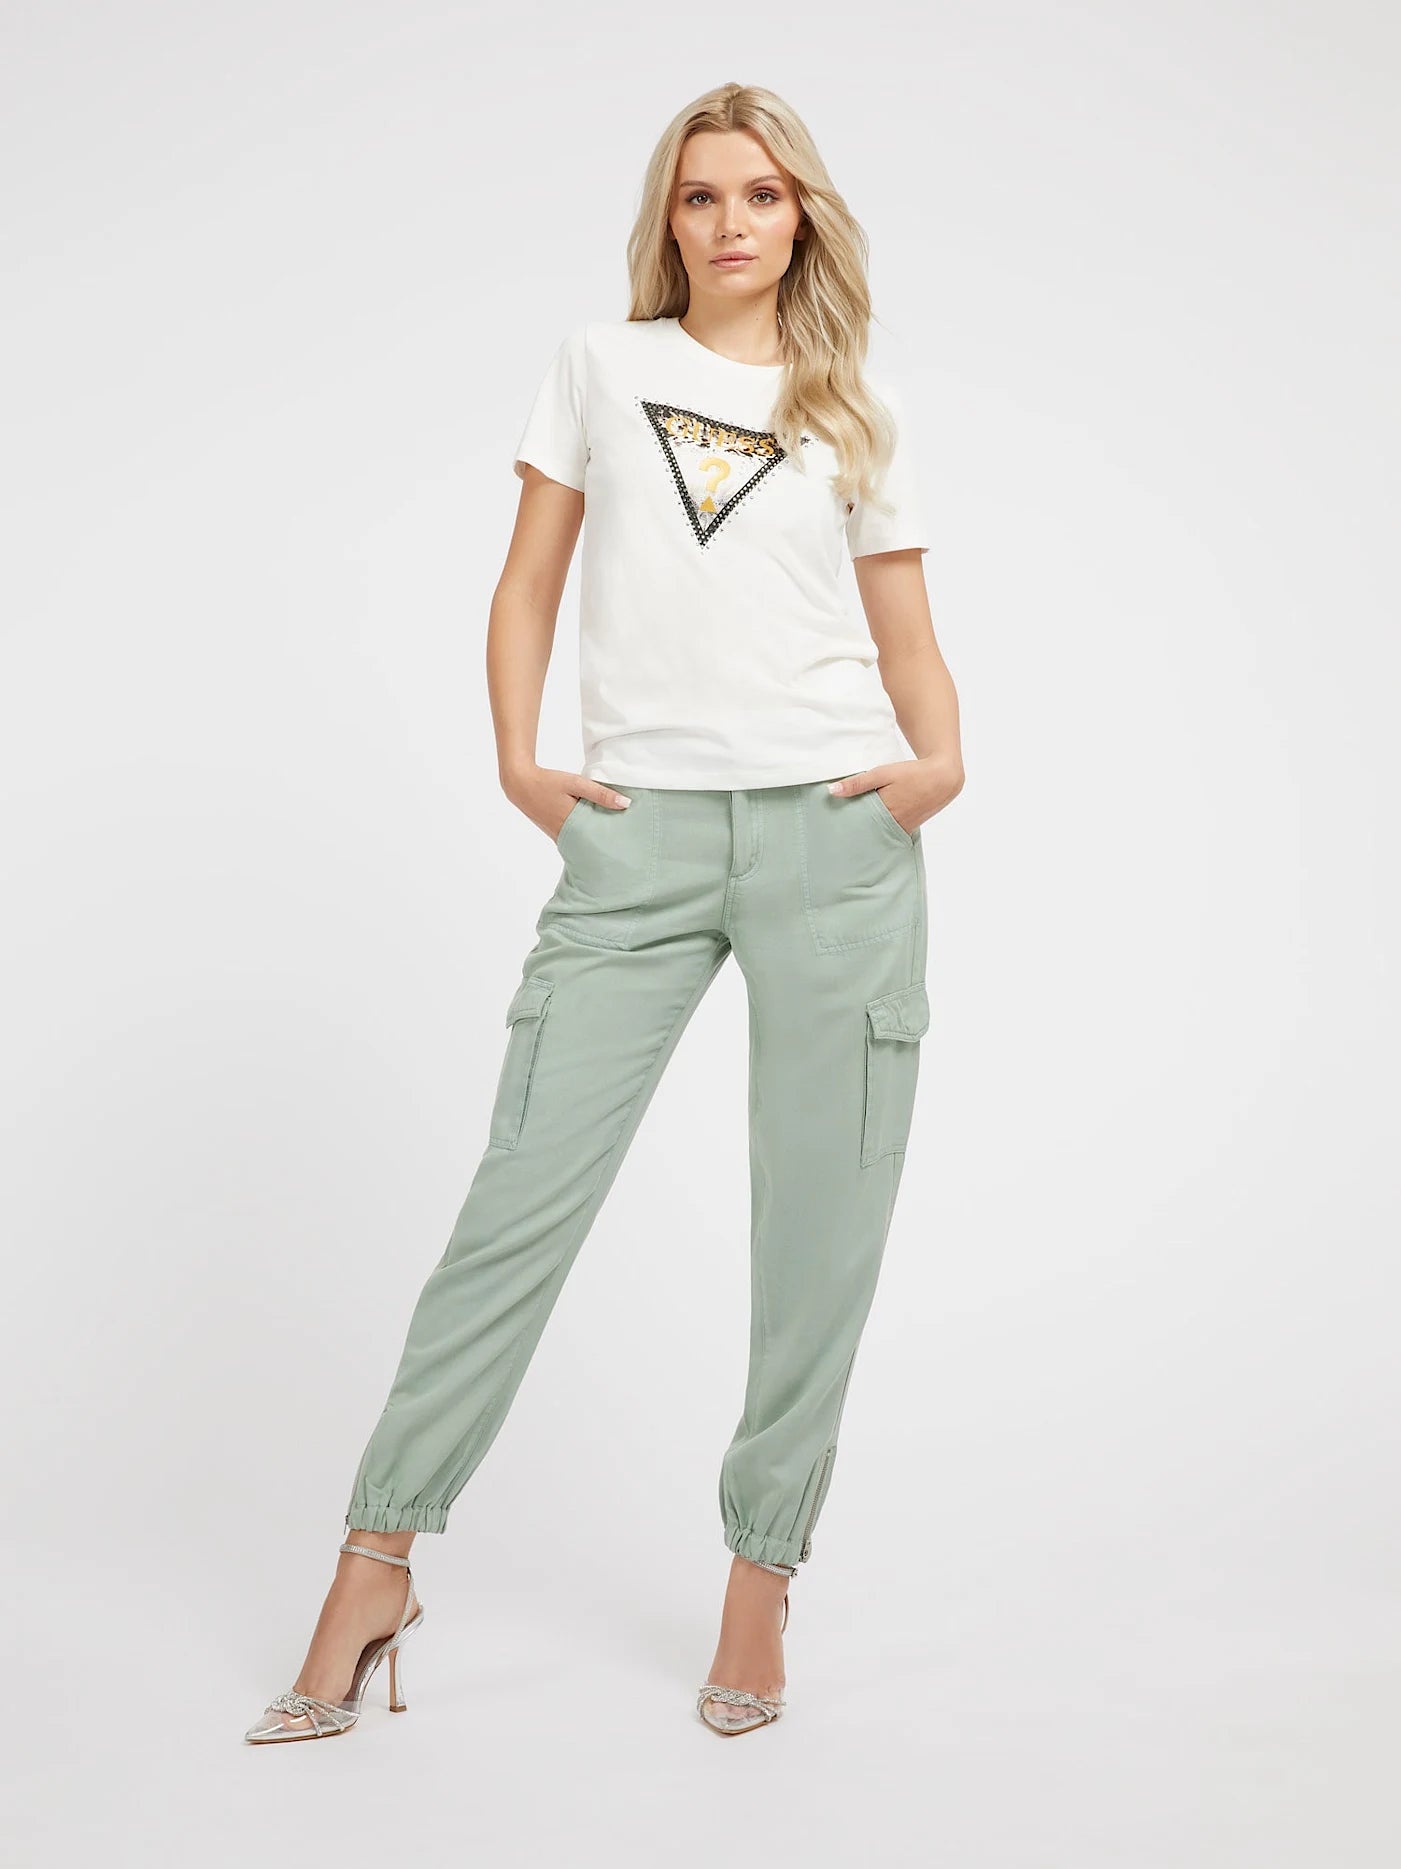 Guess Damen T-Shirt mit Logo-Dreieck